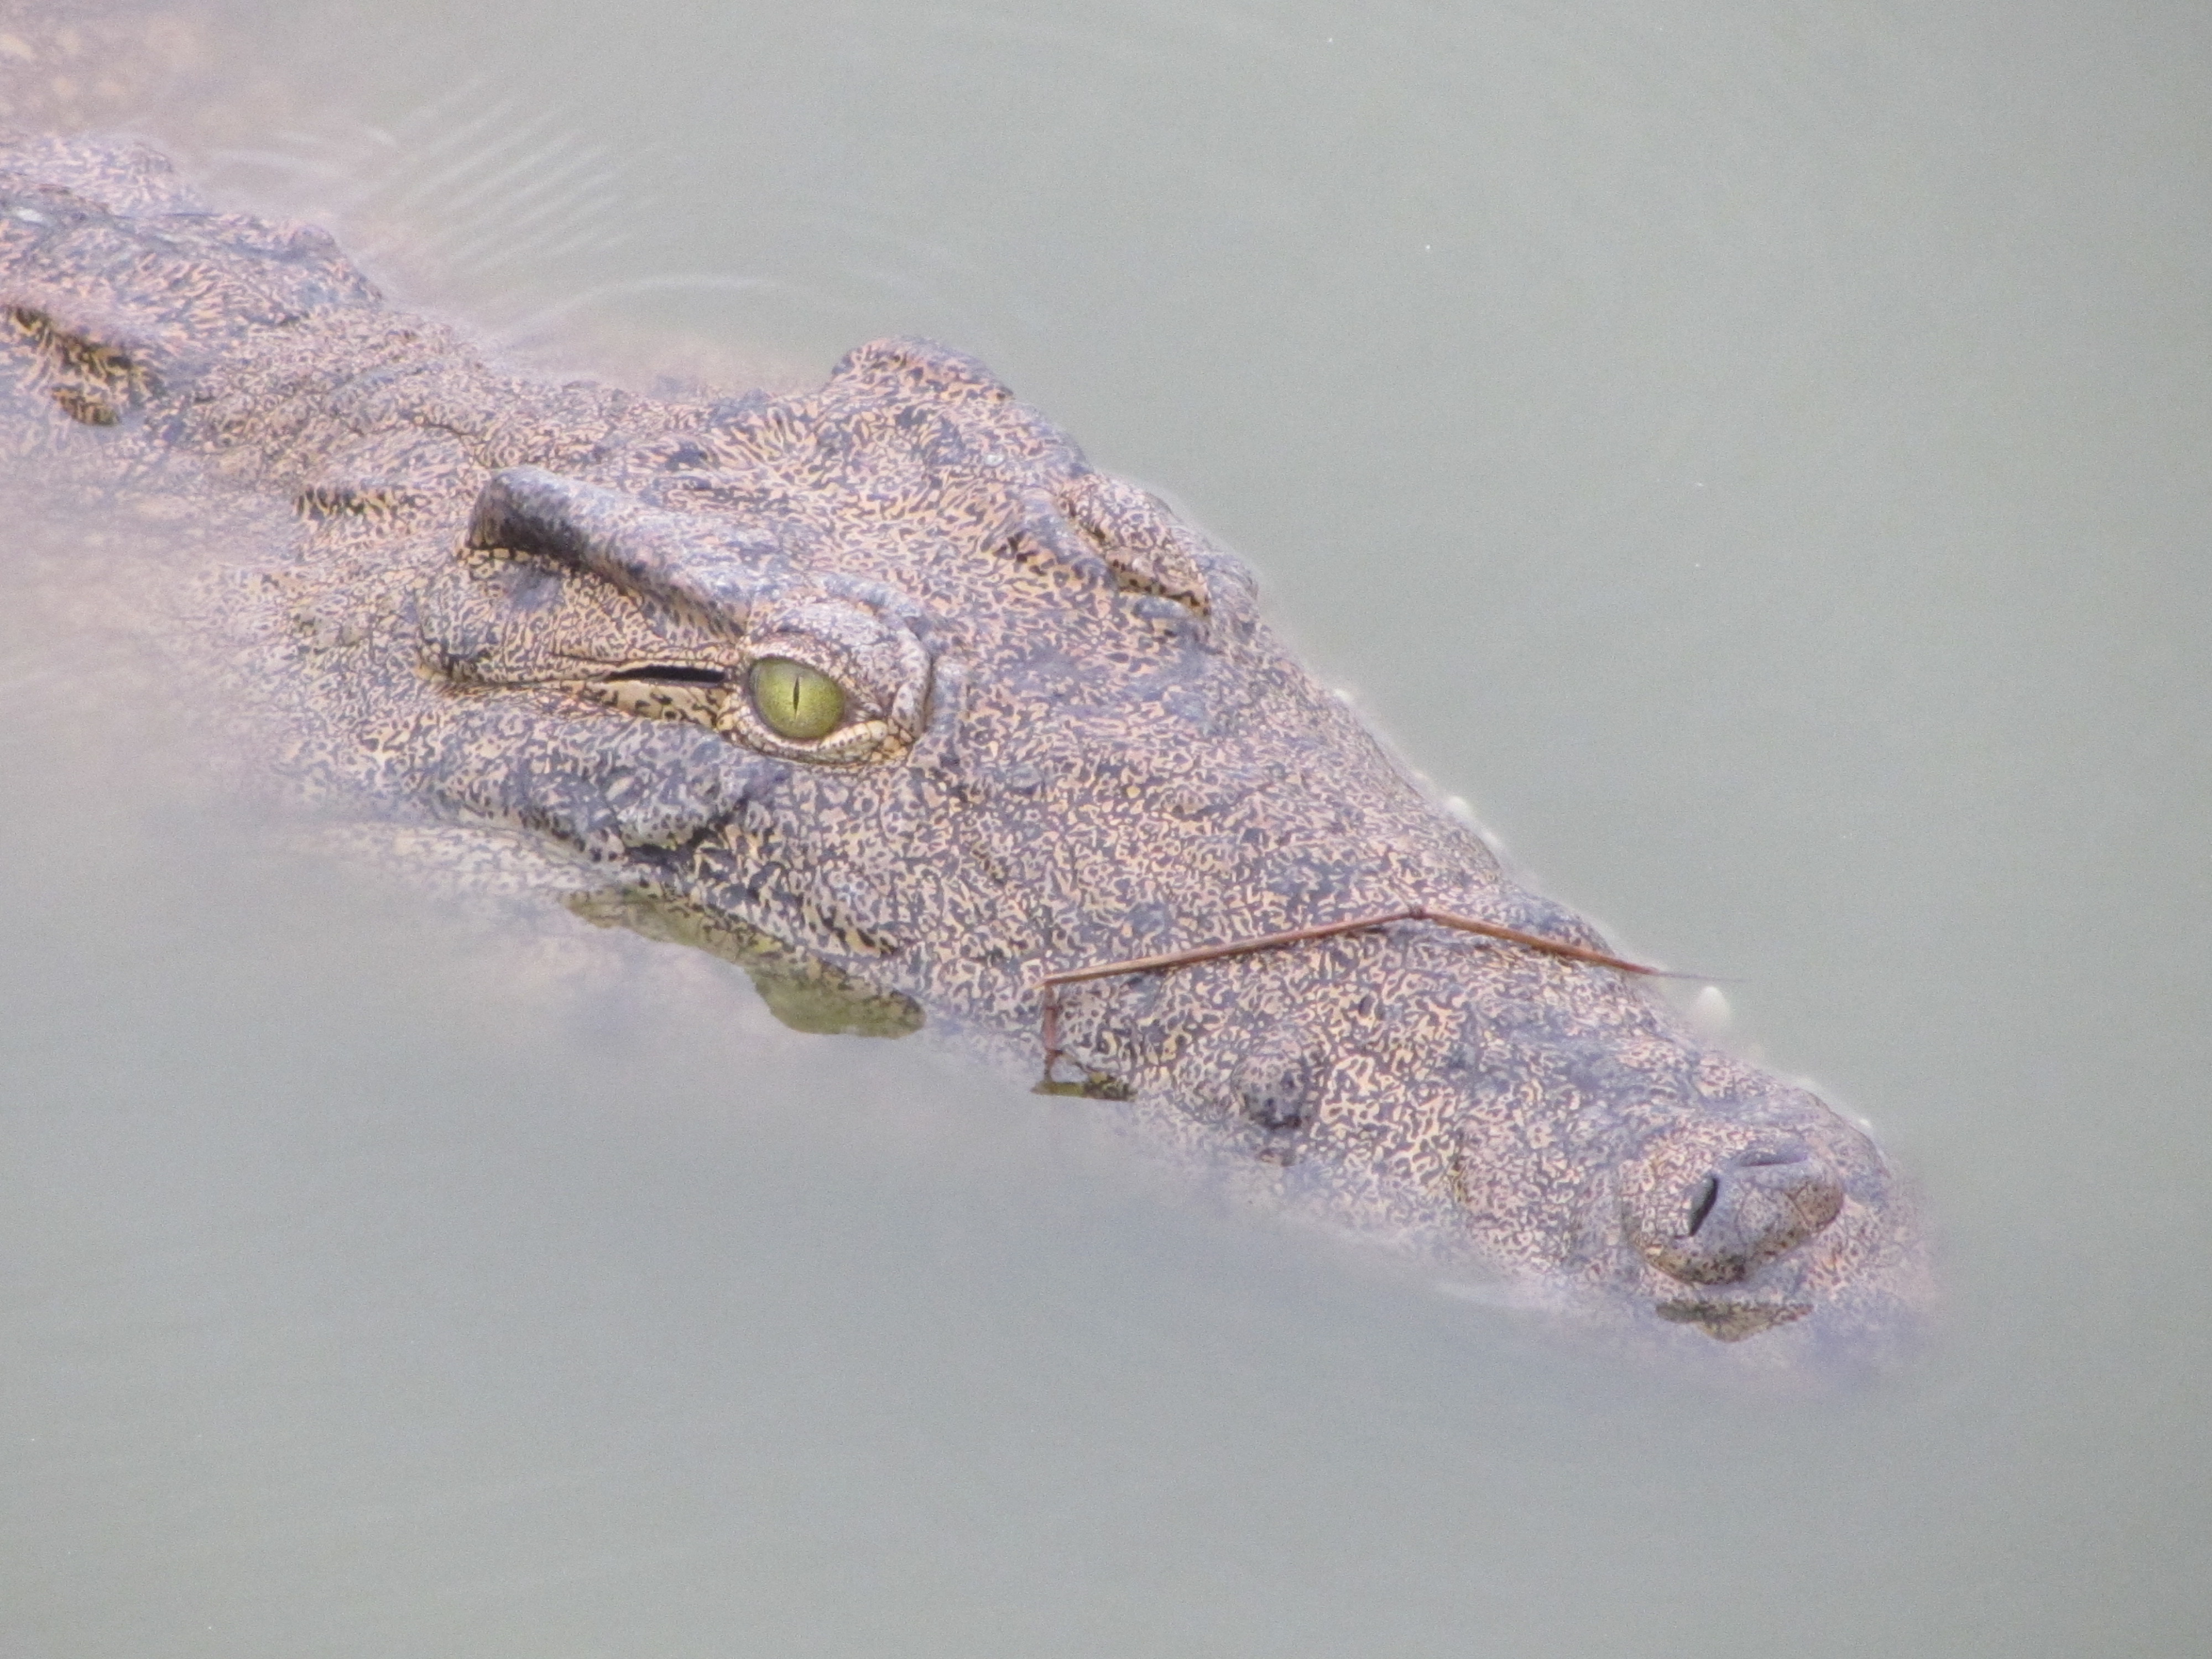 Un vell cocodril al llac artificial de Yamoussoukro